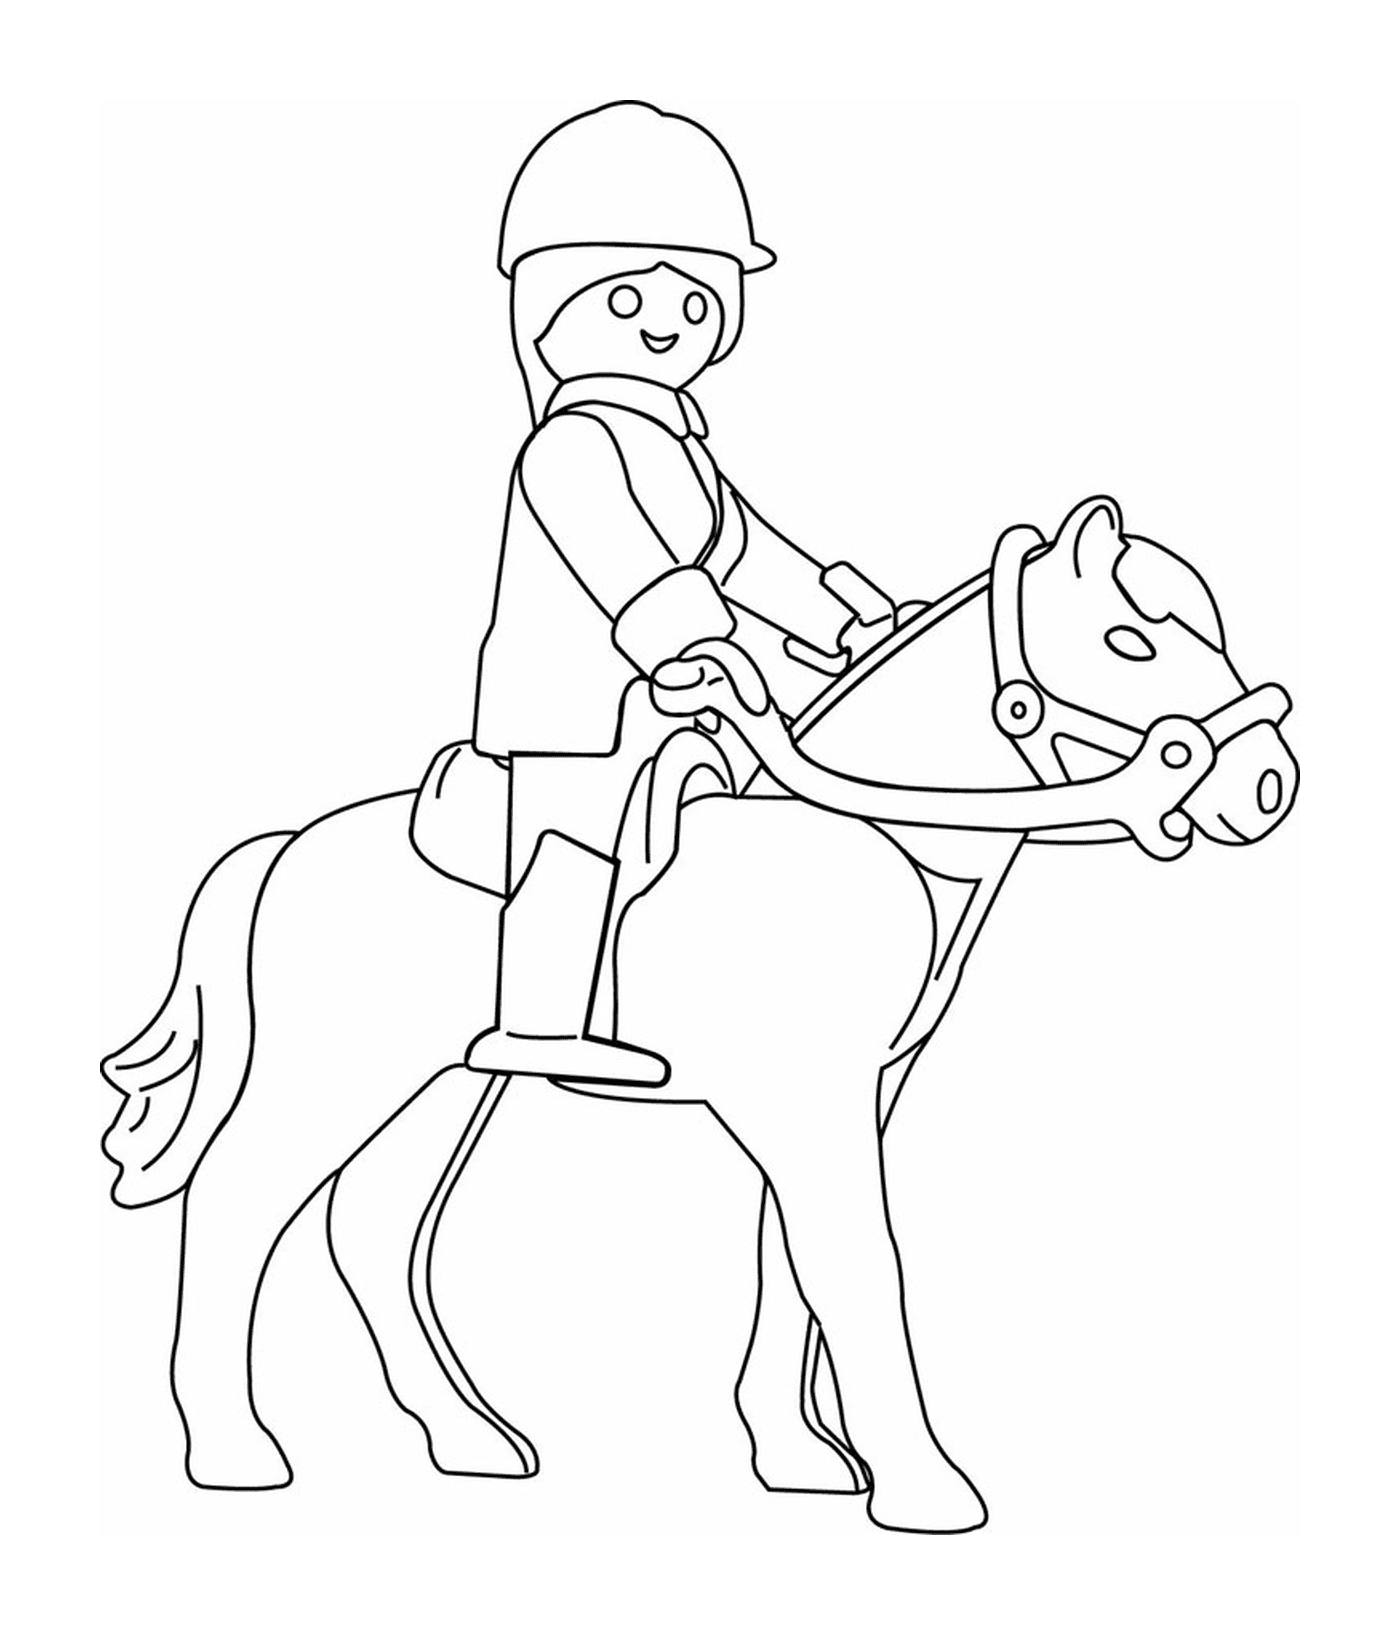   Une personne à cheval 